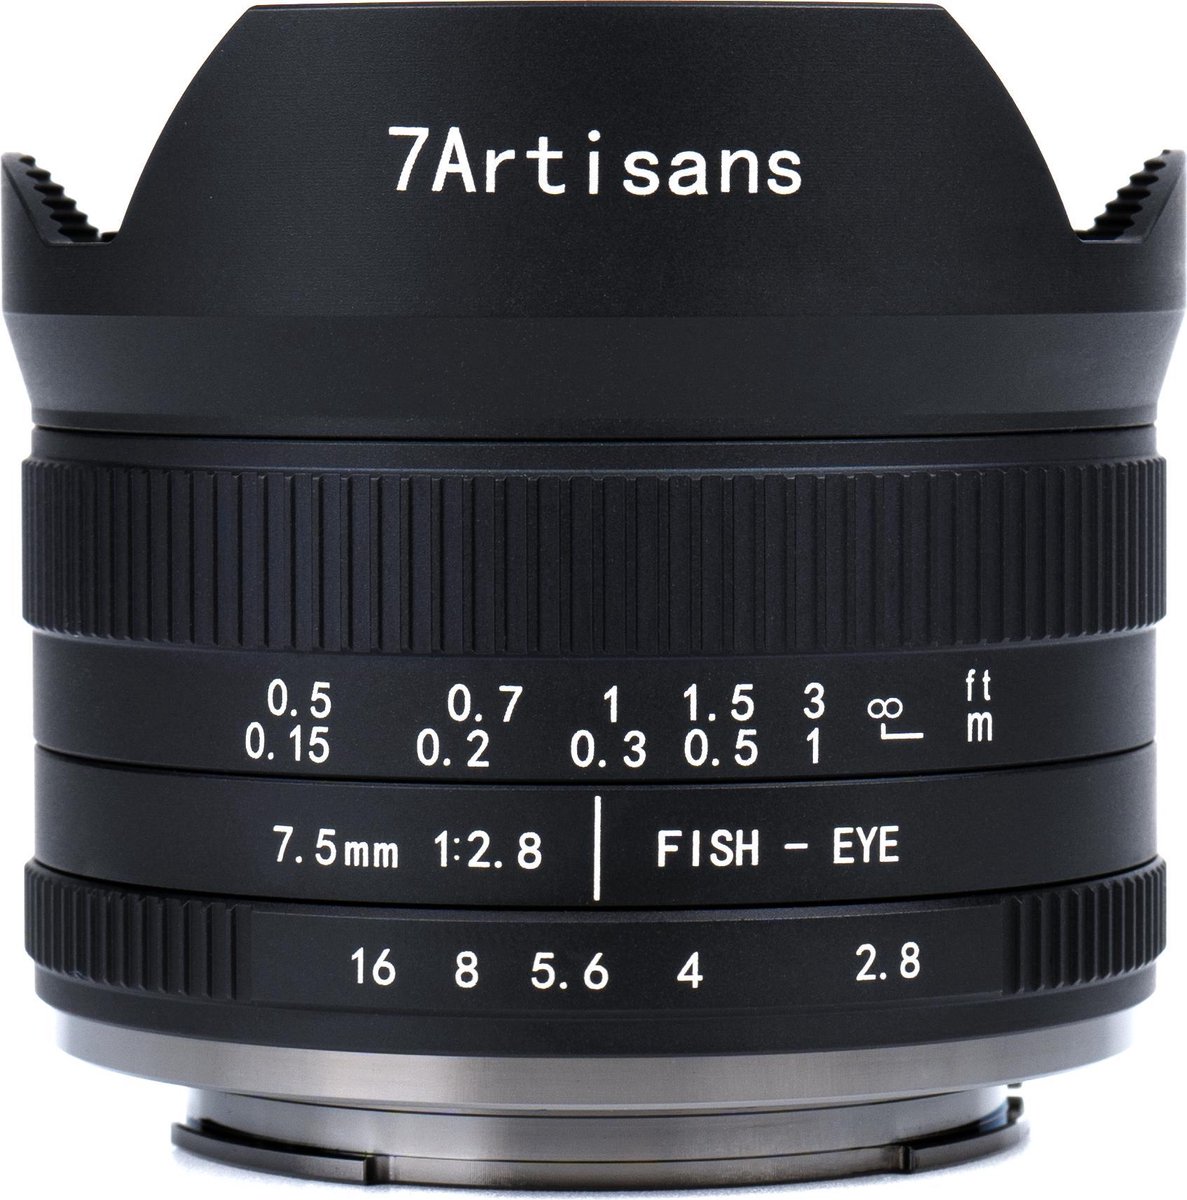 7 Artisans - Cameralens - 7.5mm F2.8 MKII APS-C voor Fuji FX-vatting